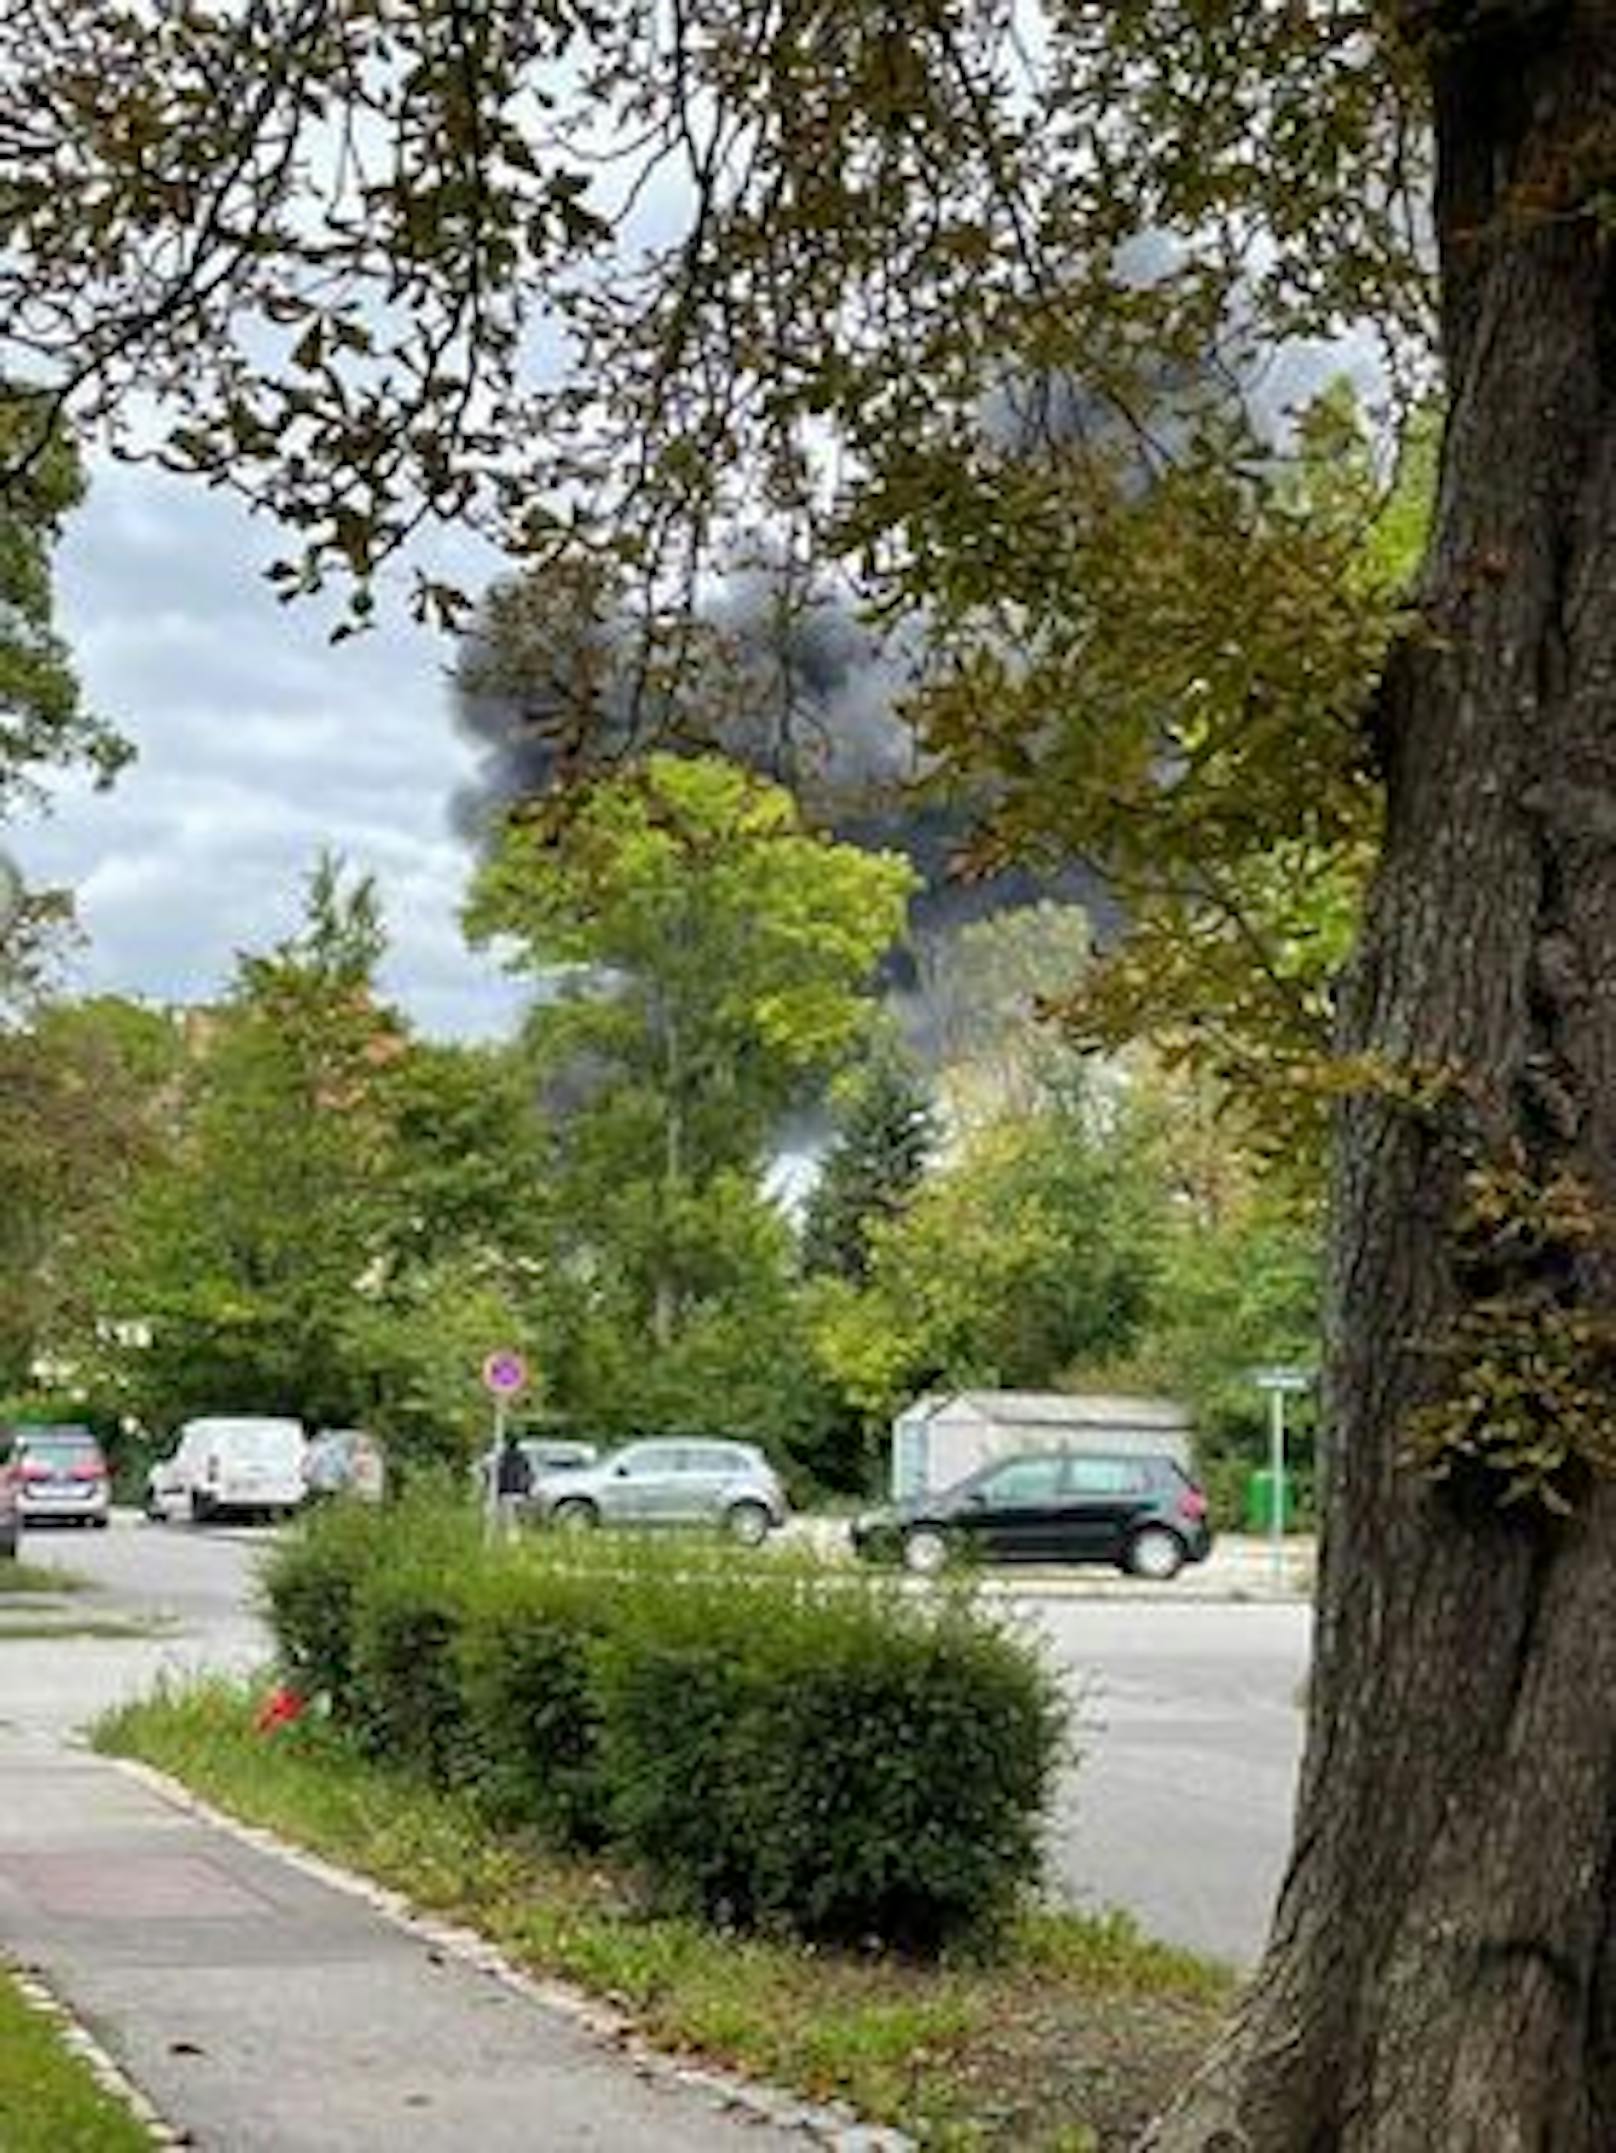  Die Rauchsäule ist kilometerweit zu sehen: Eine Firma am ehemaligen Semperit-Areal in Traiskirchen steht in Brand.